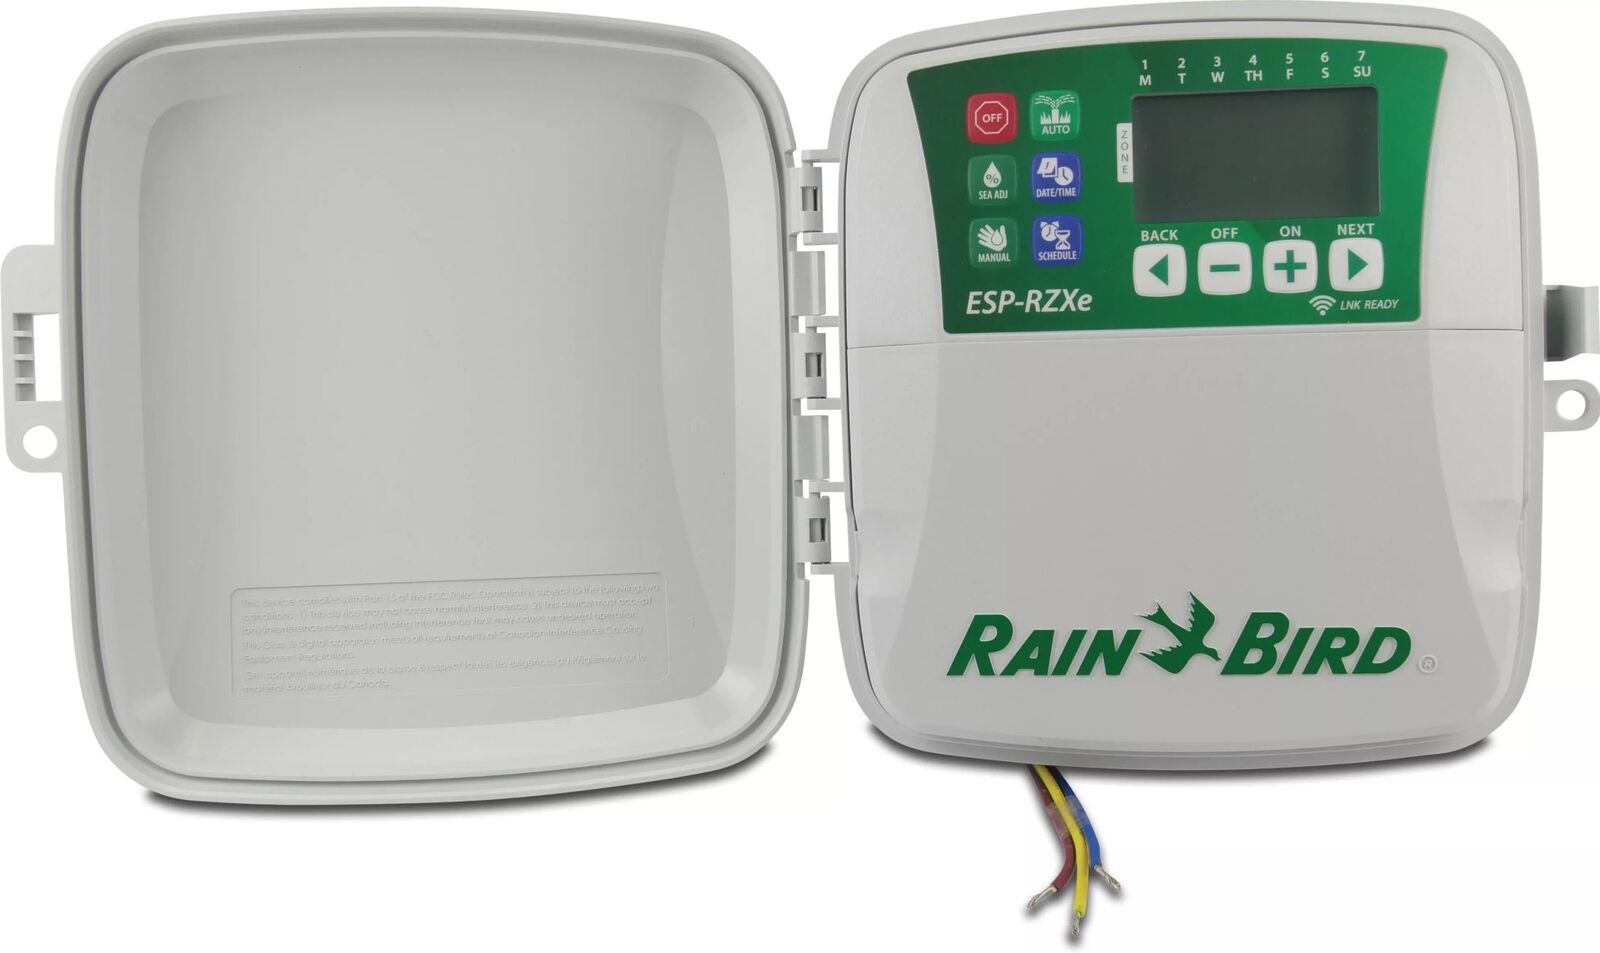 DESCATALOGADO RAIN BIRD PROGRAMADOR ELECTRONICO ESP-RZX6i INTERIOR 6 ZONAS